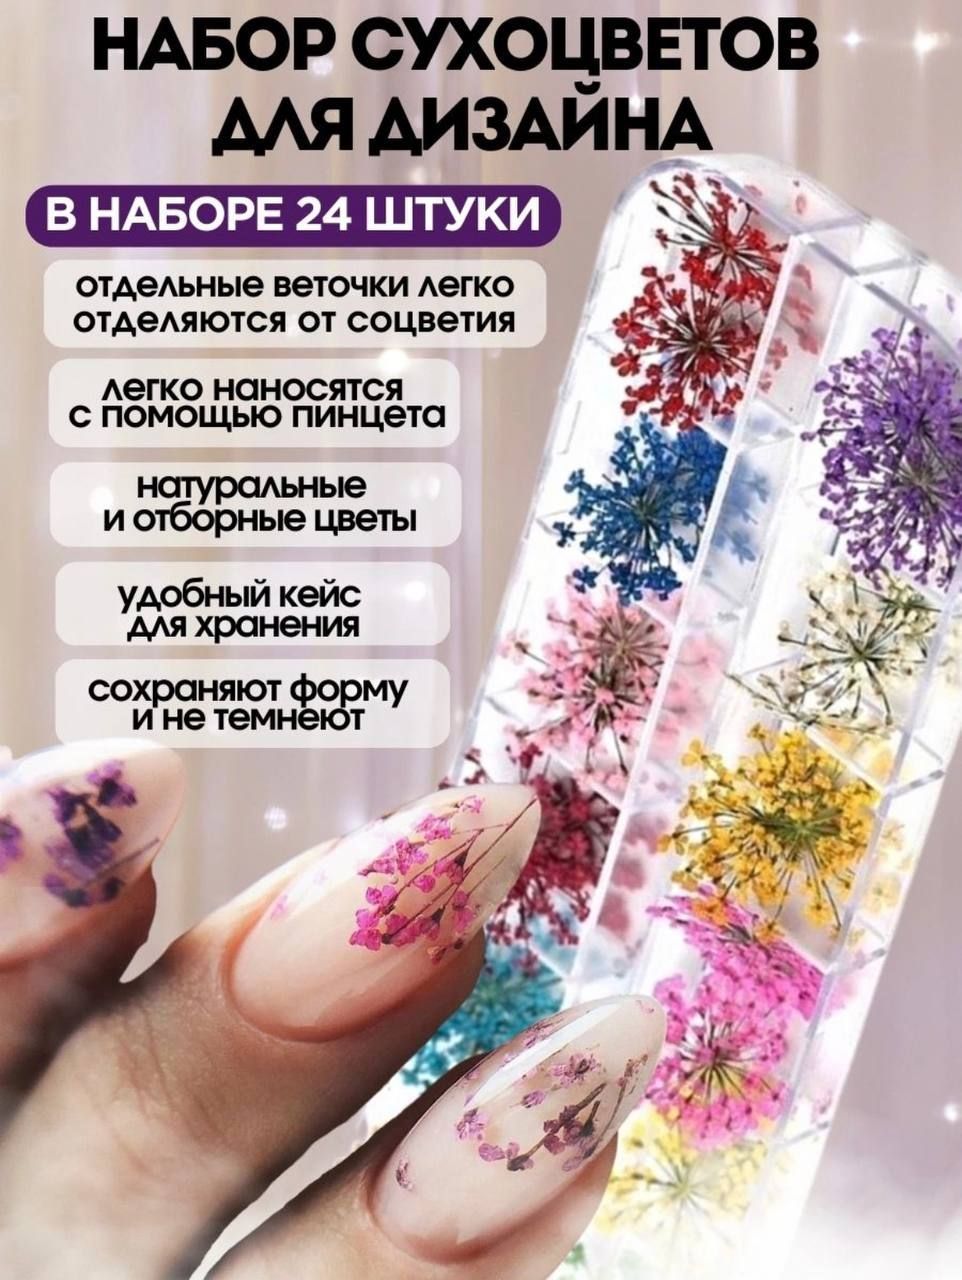 Маникюр с сухоцветами - идеи с фото на осень , как украсить ногти